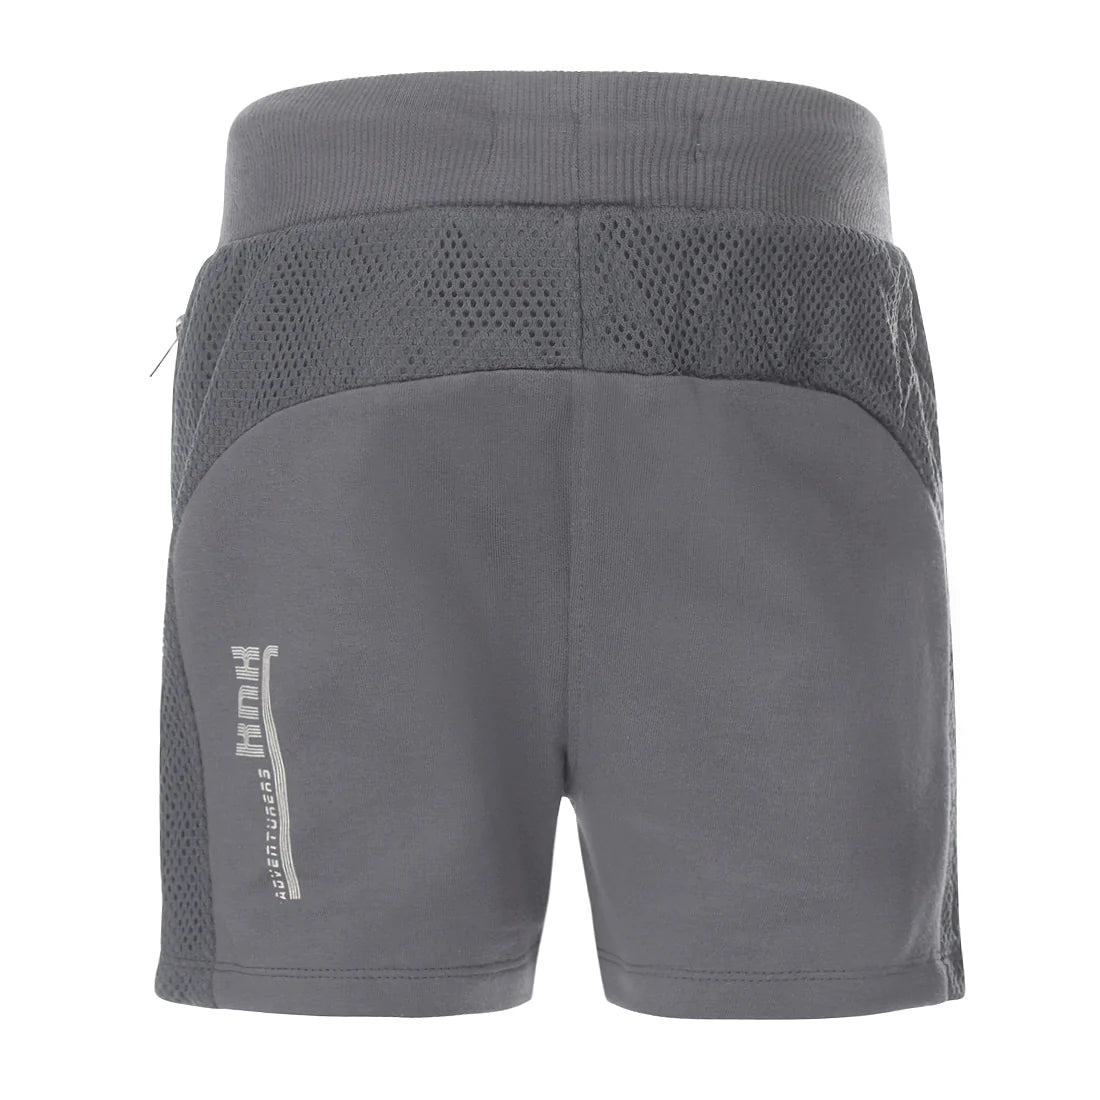 Jongens Jogging shorts van Koko Noko in de kleur Steel grey in maat 128.